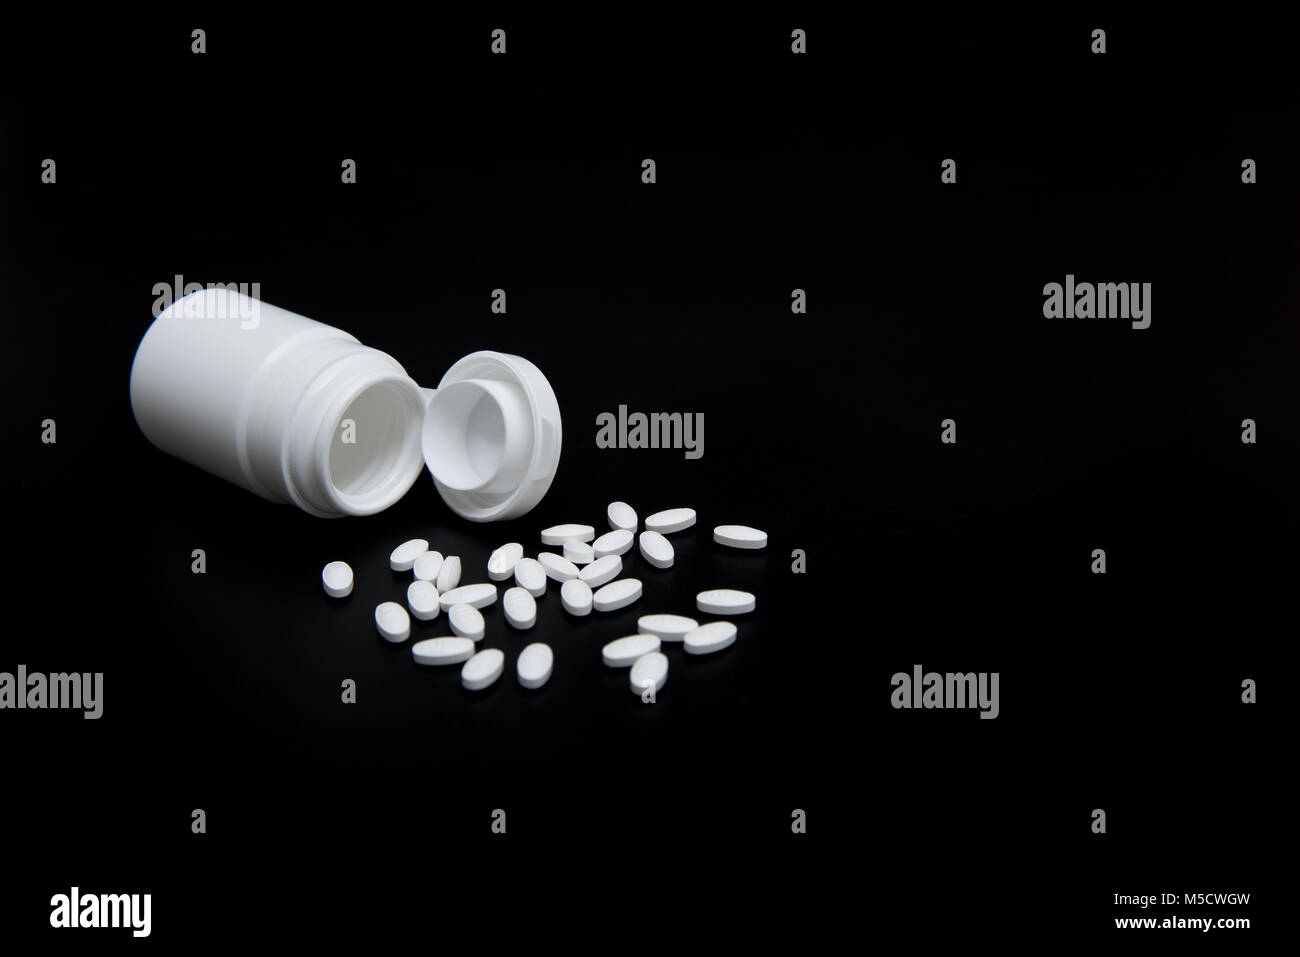 Weiße Pillen und weiße Flasche auf schwarzem Hintergrund. Mit der Kopie im Hintergrund. Für Gesundheit und medizinische Industrie Konzept verwendet. Stockfoto